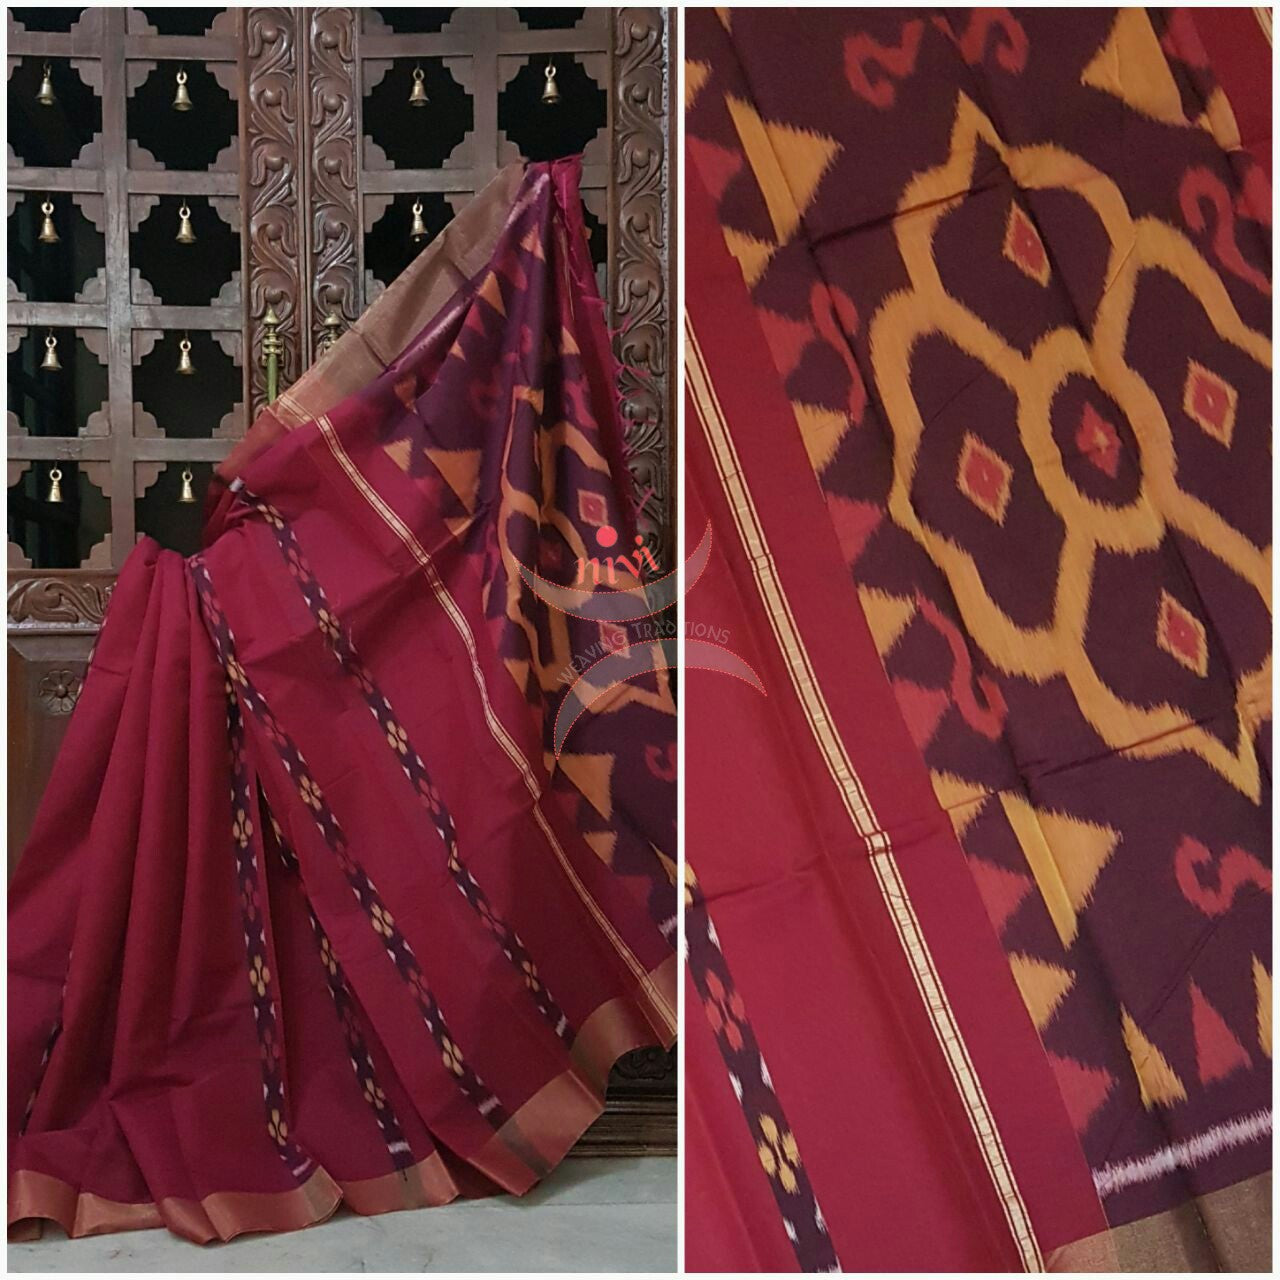 Maroon Pochampalli ikat merserised cotton saree with tissue border.